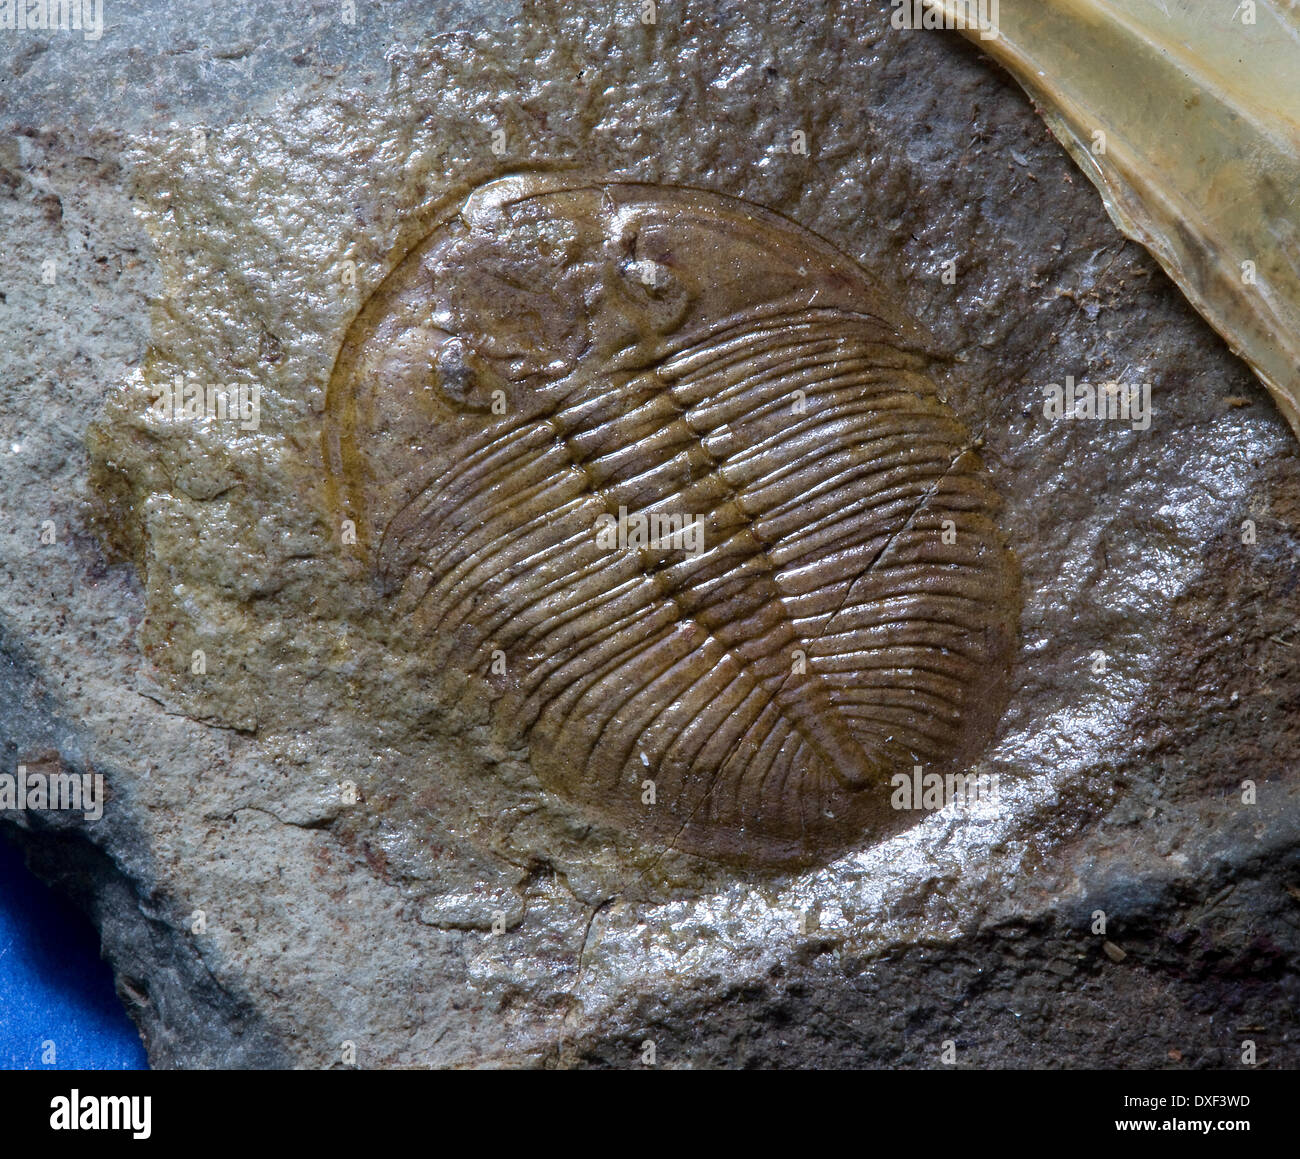 Échantillon de trilobite fossile de Shropshire en Angleterre. Banque D'Images